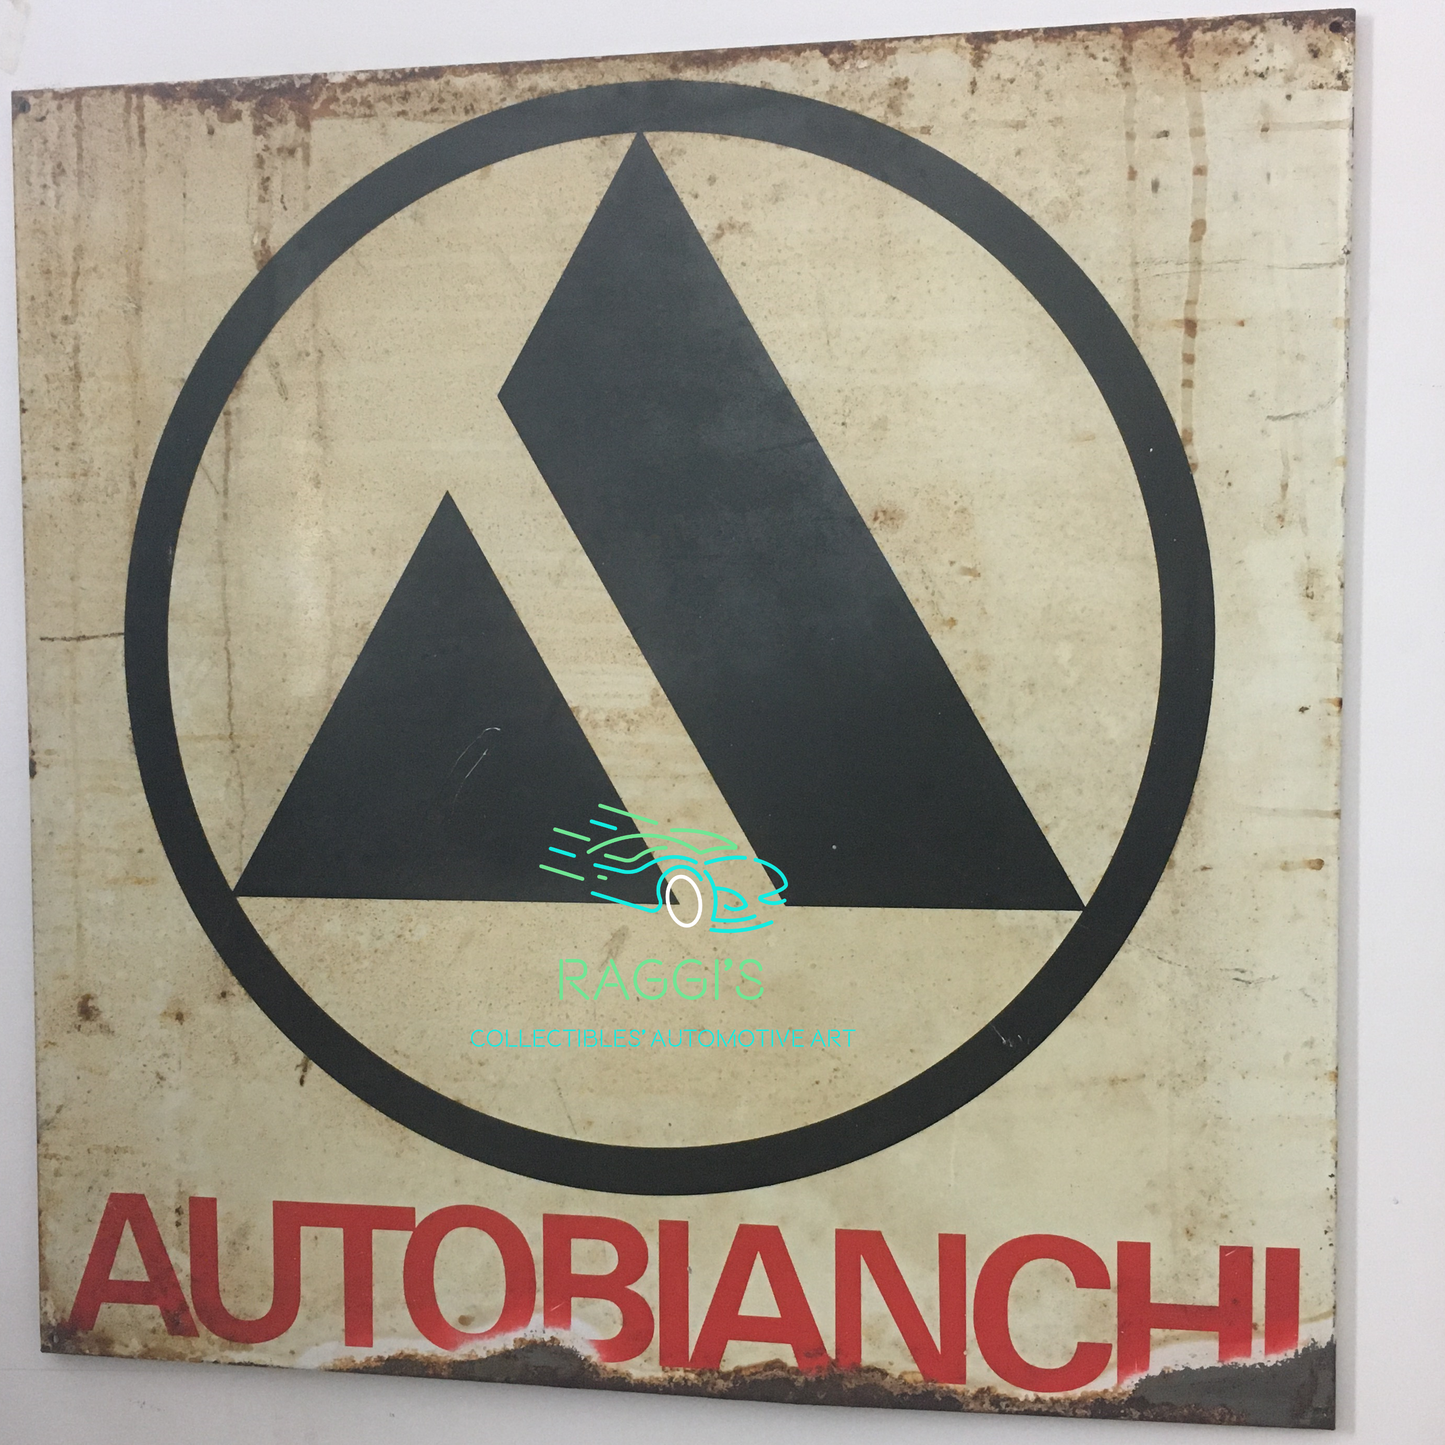 Autobianchi, Insegna Originale in Metallo Serigrafato Autobianchi Dimensioni 80x80cm Made in Italy - Raggi's Collectibles' Automotive Art